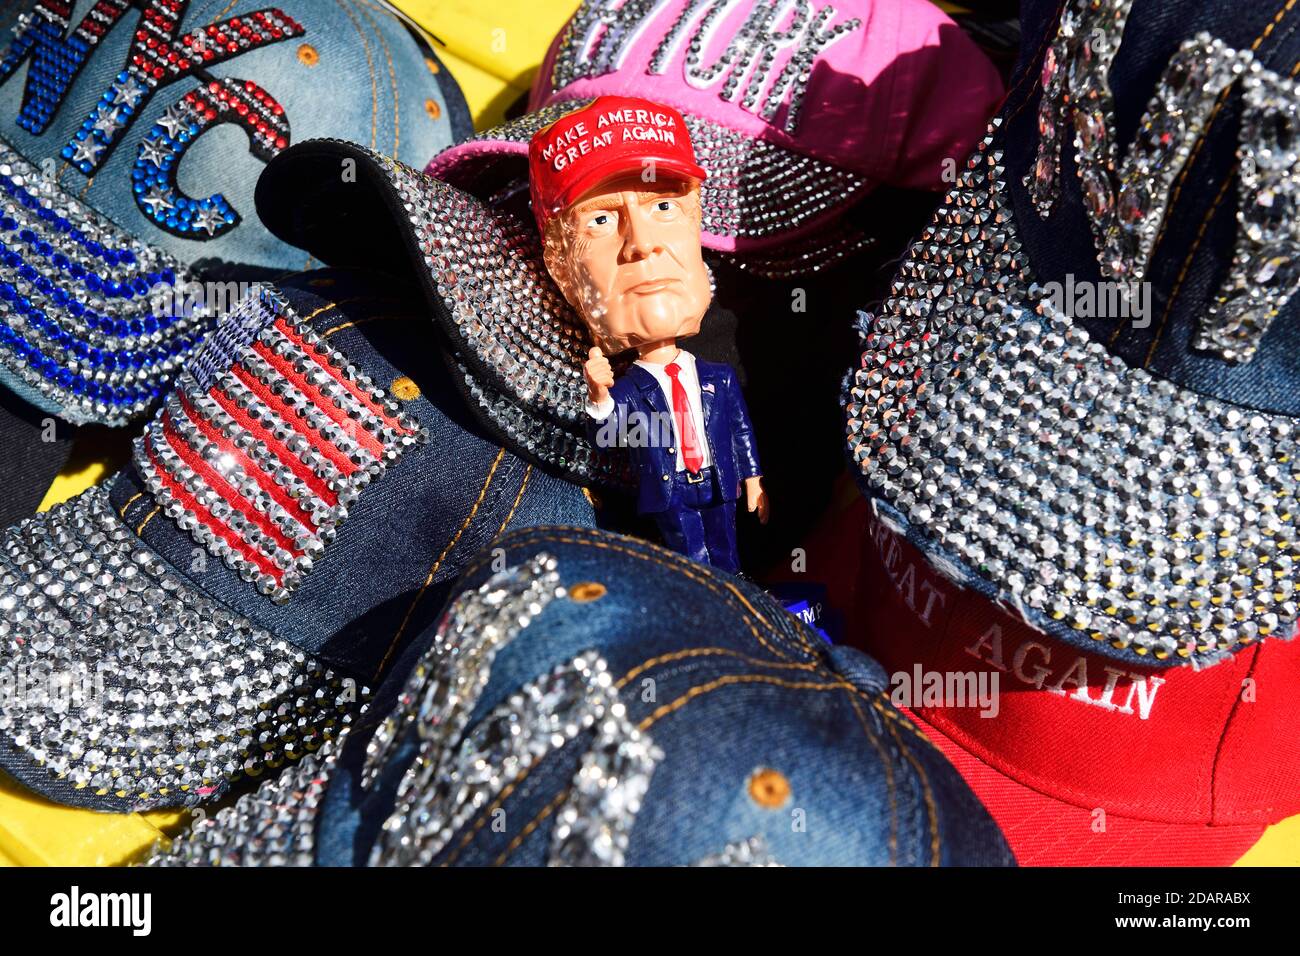 Donald Trump als Scherzfigur mit Make America wieder groß Baseball Cap, Manhattan, New York City, USA Stockfoto